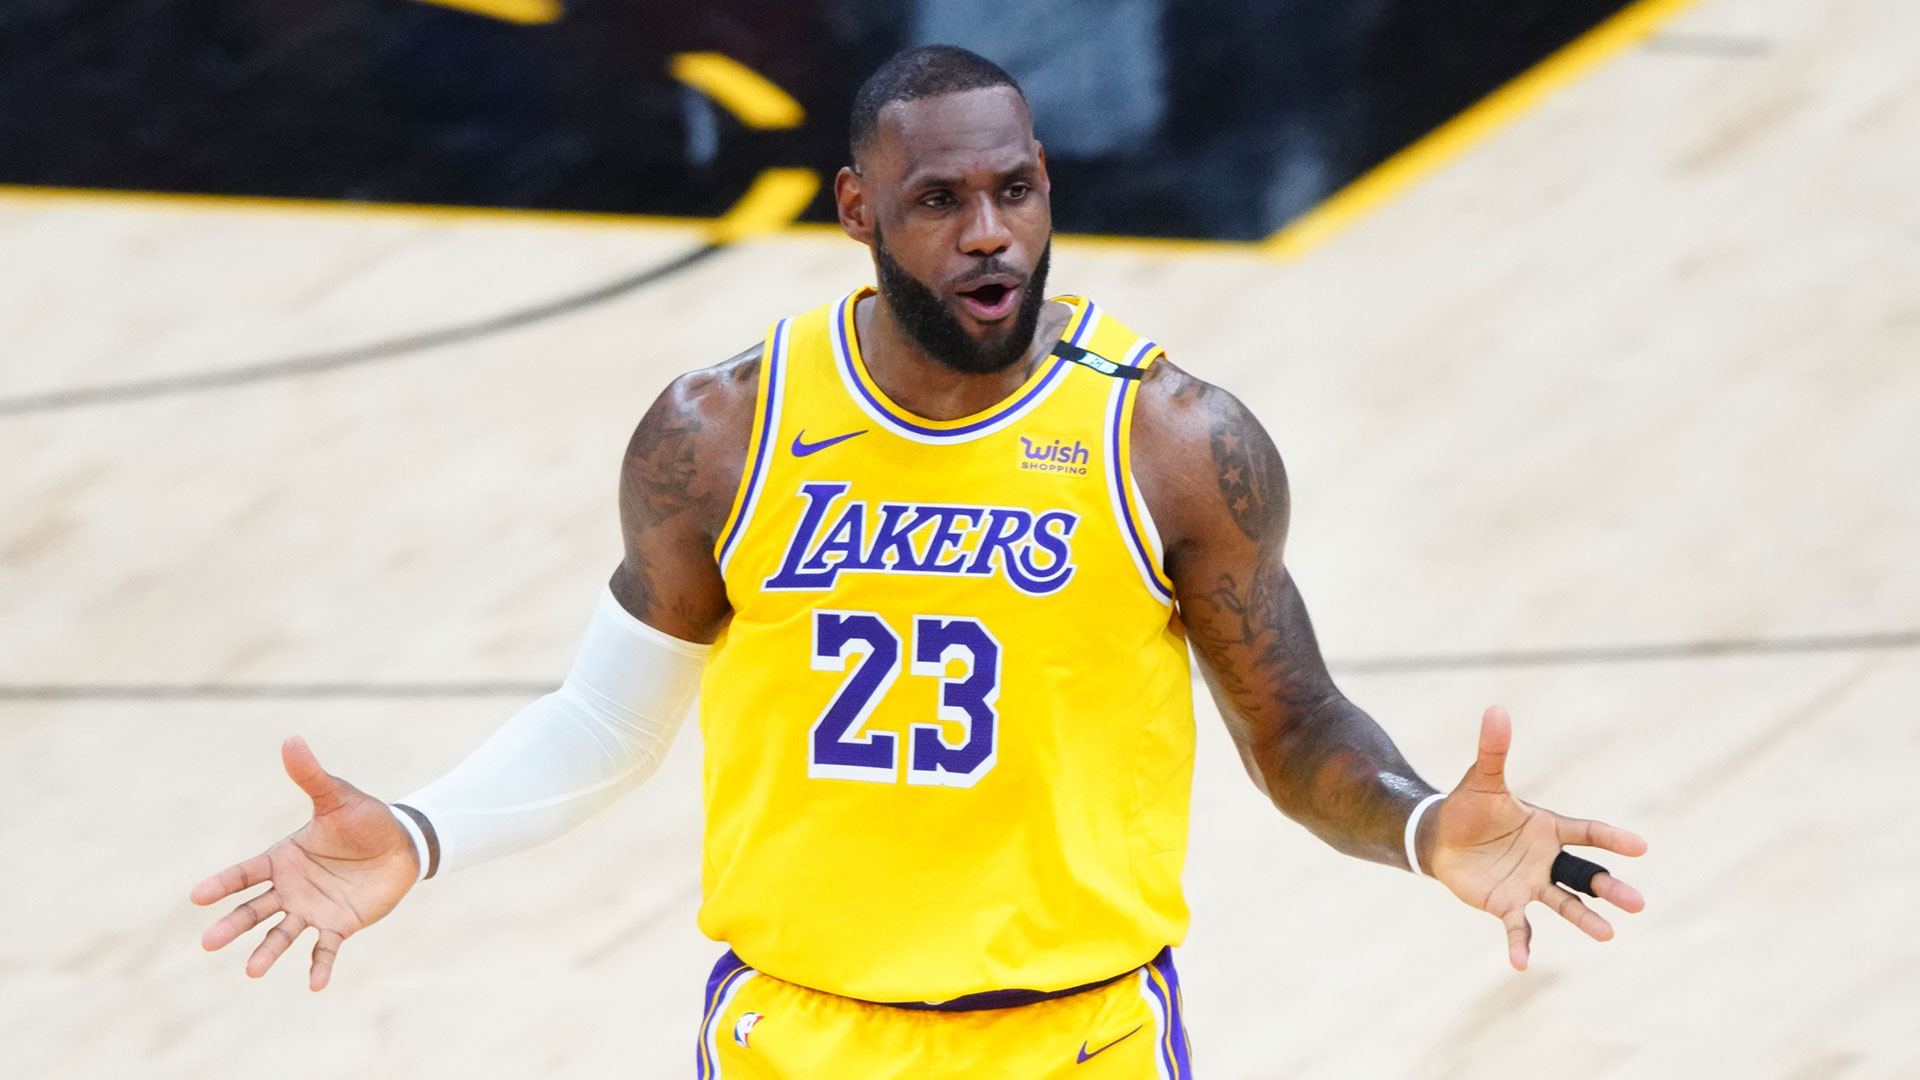 LeBron James, Los Angeles Lakers forward, at the 2022 Media day at